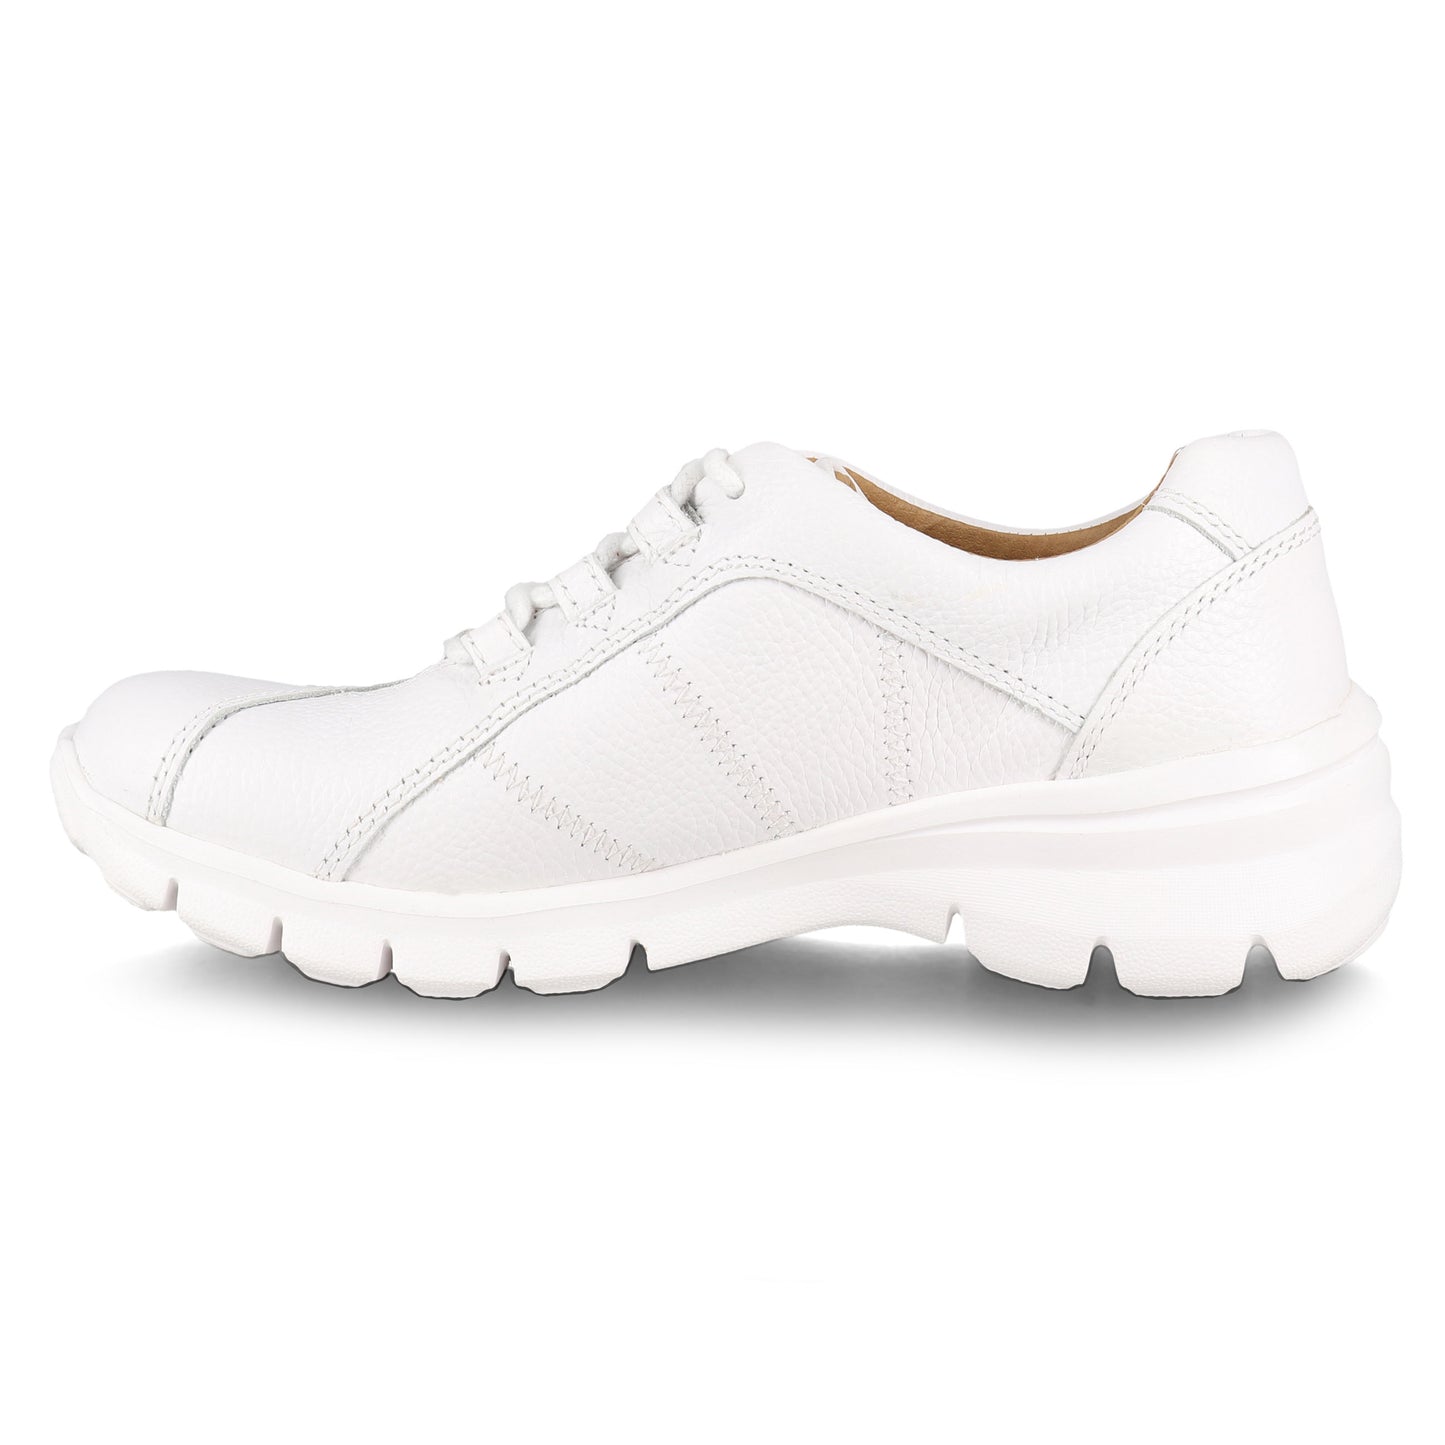 Nursemates Lexi White Shoes